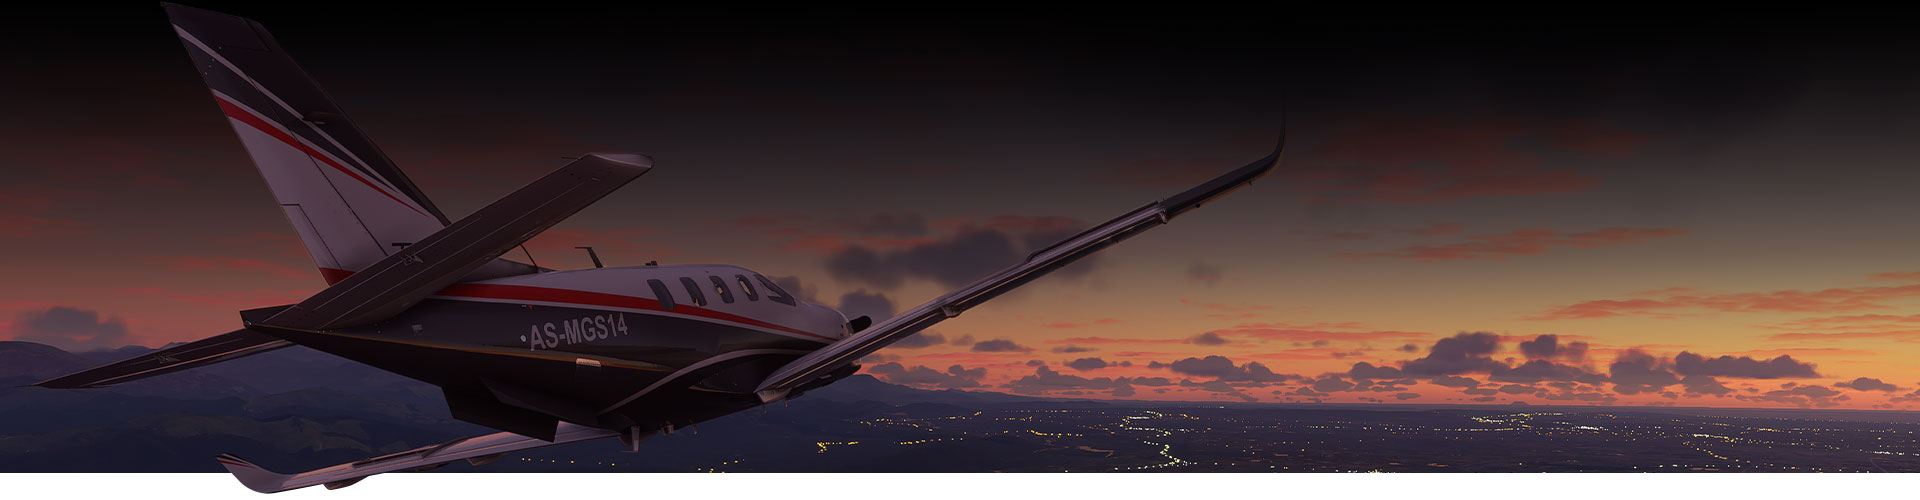 Flugzeug vom Microsoft Flight Simulator fliegt über eine Stadt bei Sonnenuntergang